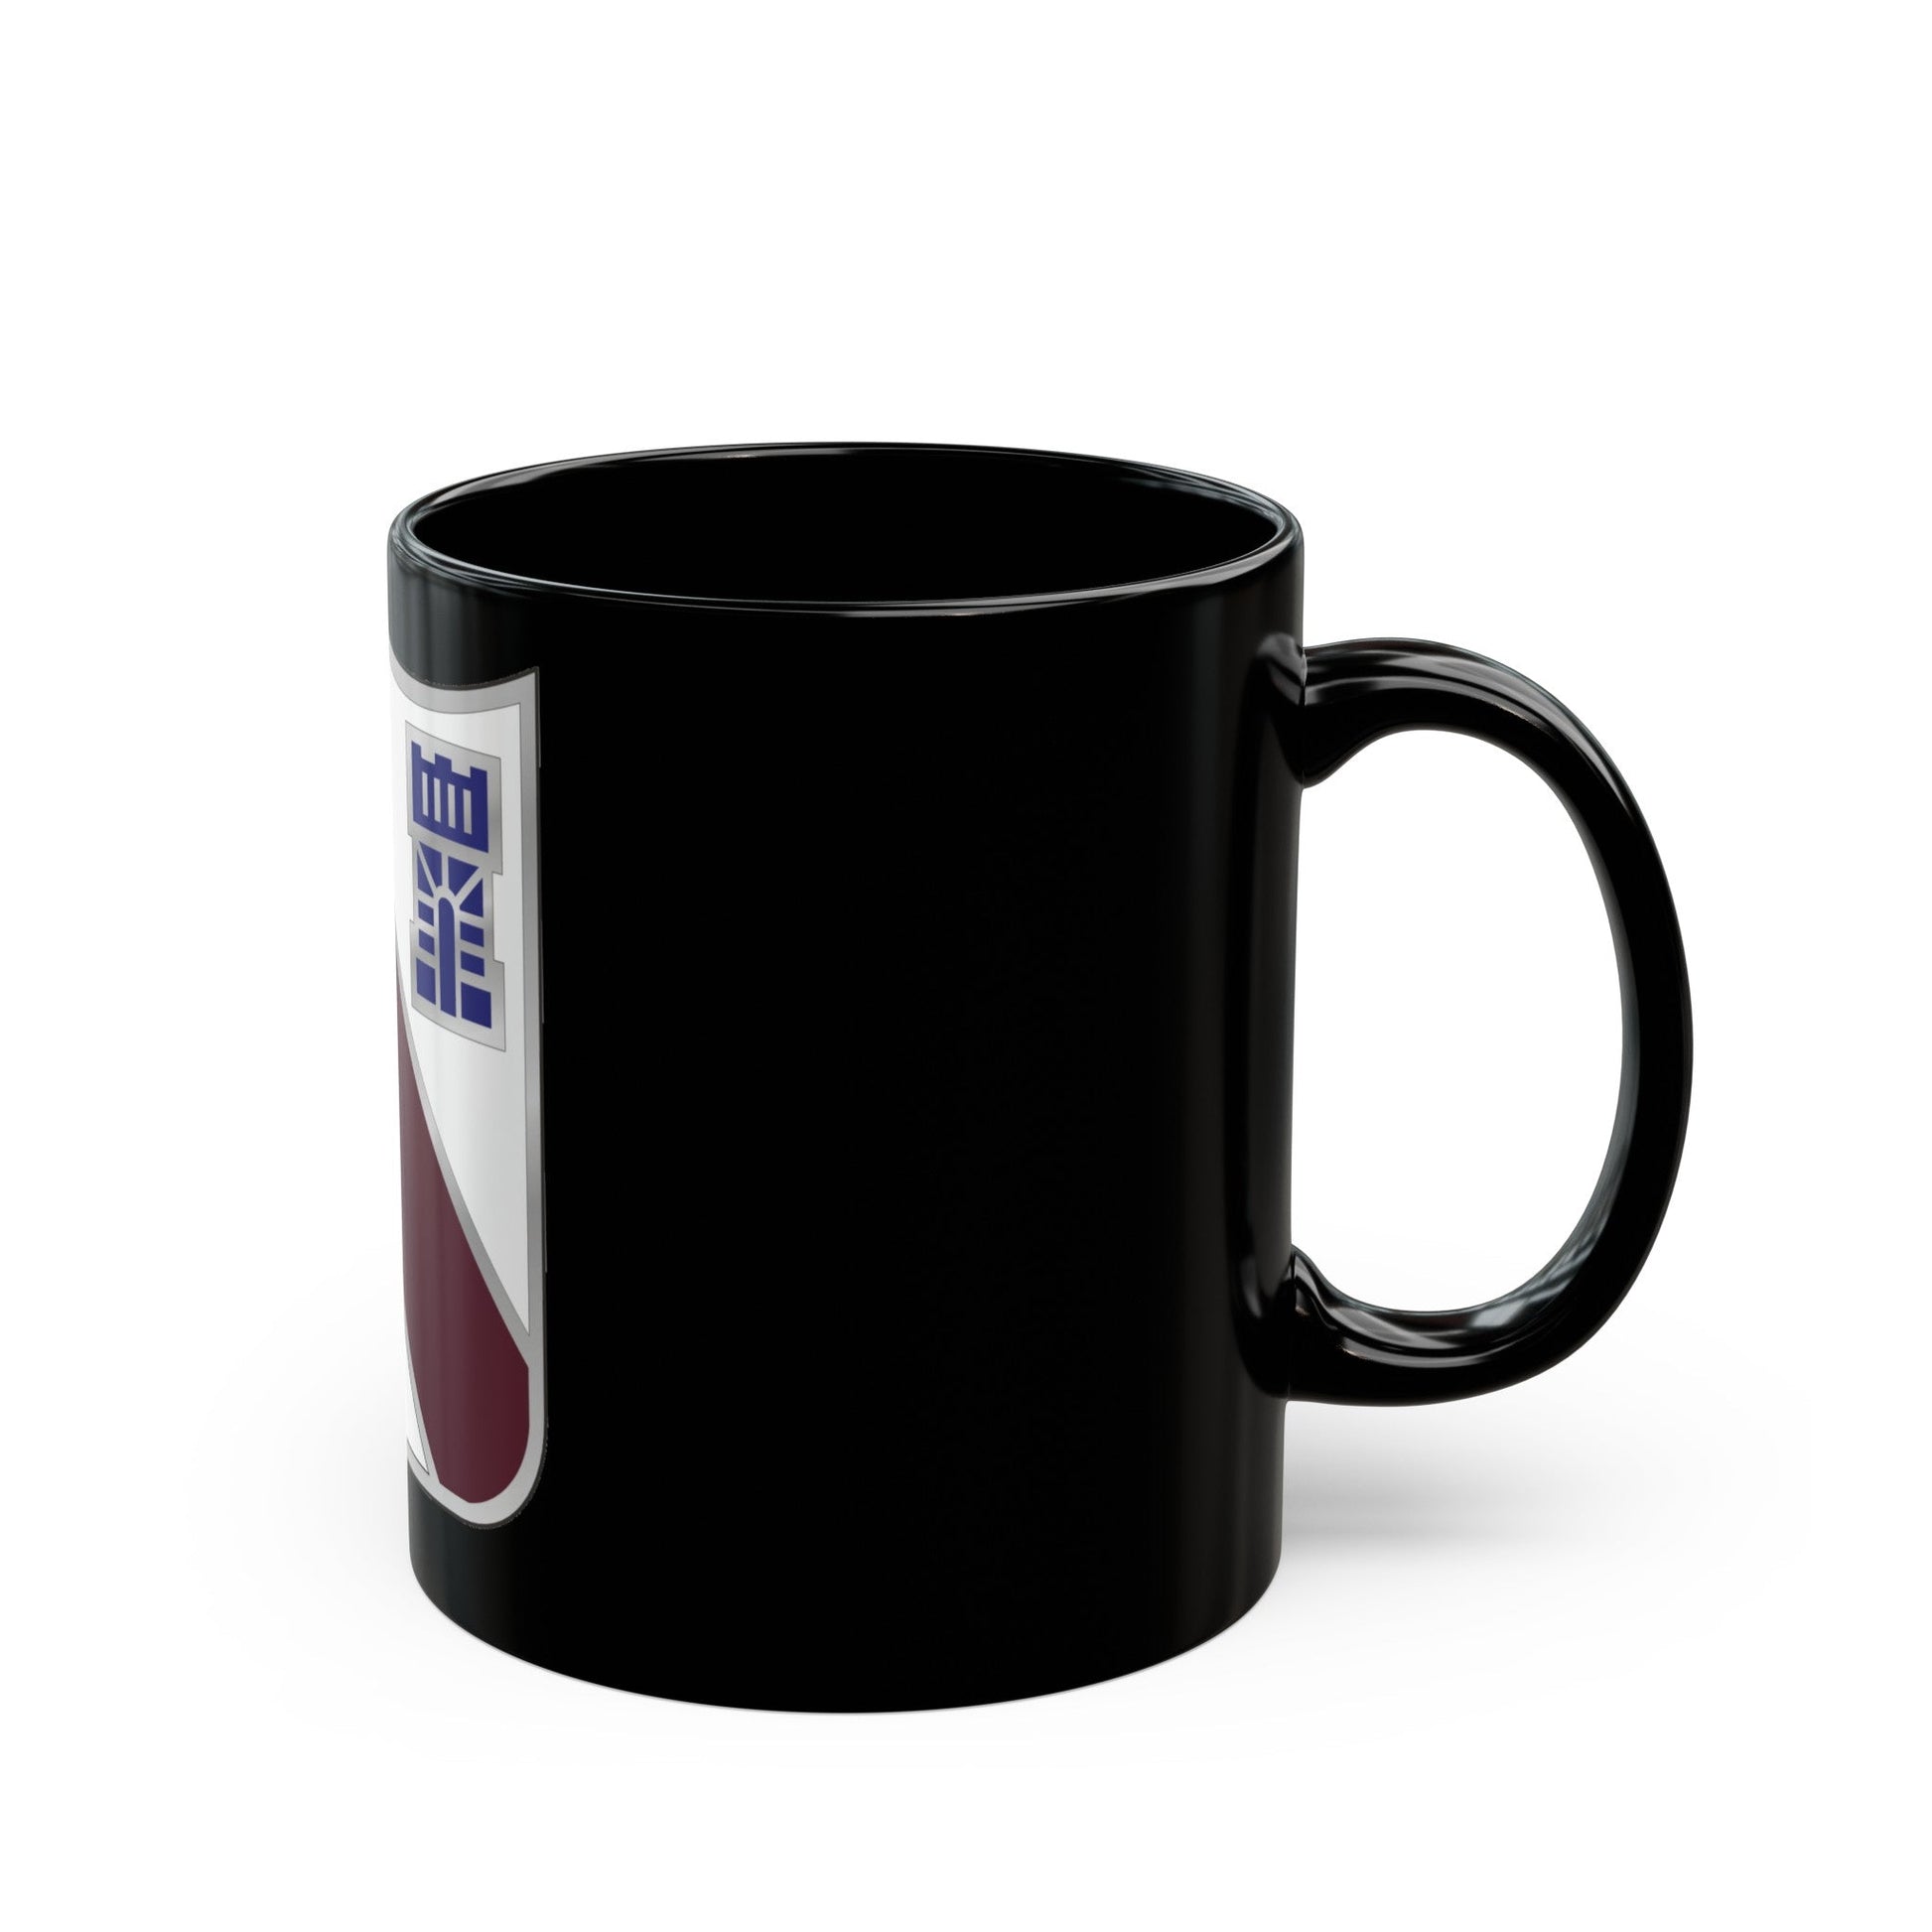 104 Medical Battalion (U.S. Army) Black Coffee Mug-The Sticker Space